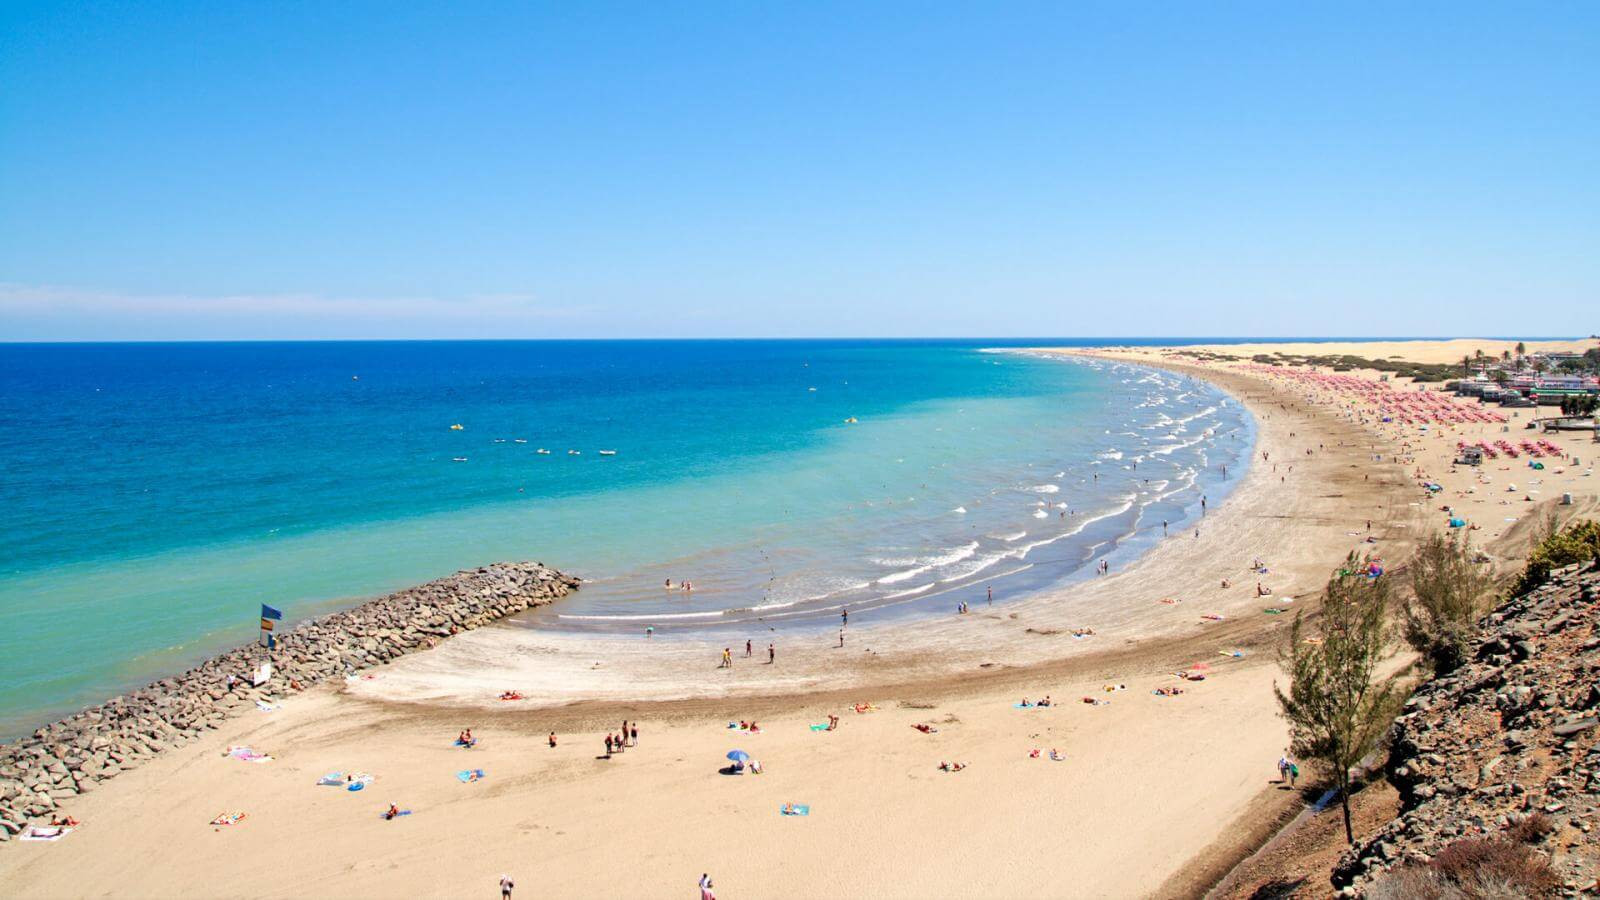 Playa del Inglés beach